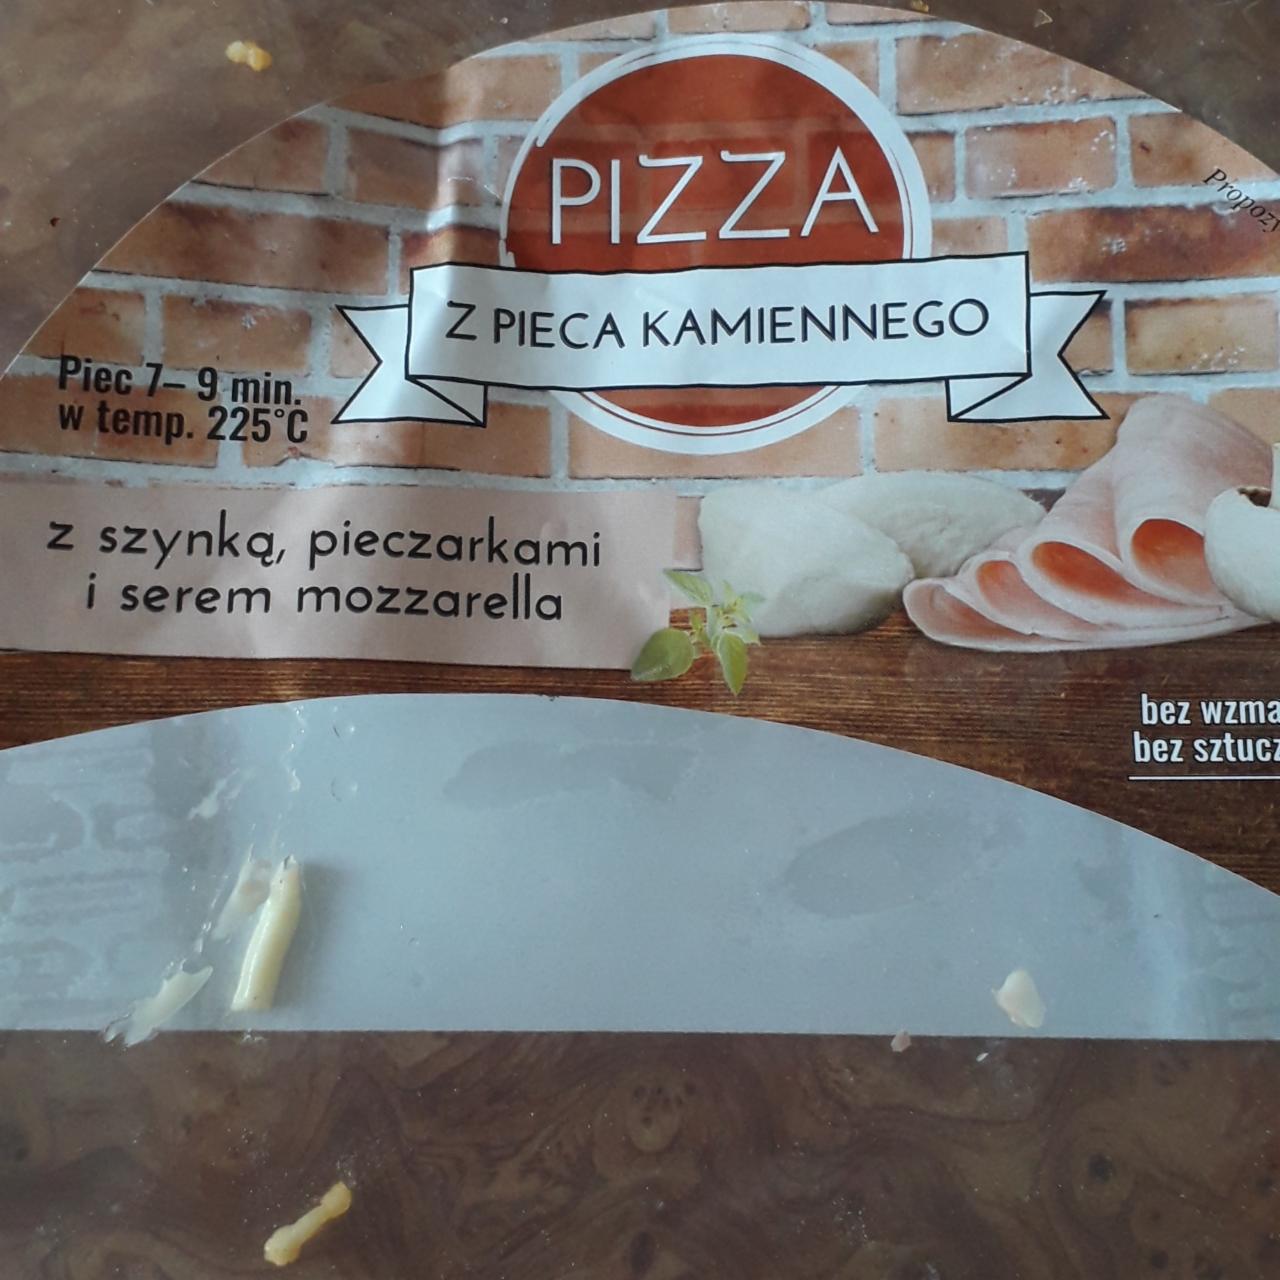 Zdjęcia - Pizza z pieca kamiennego z szynką pieczarkami i serem mozzarella